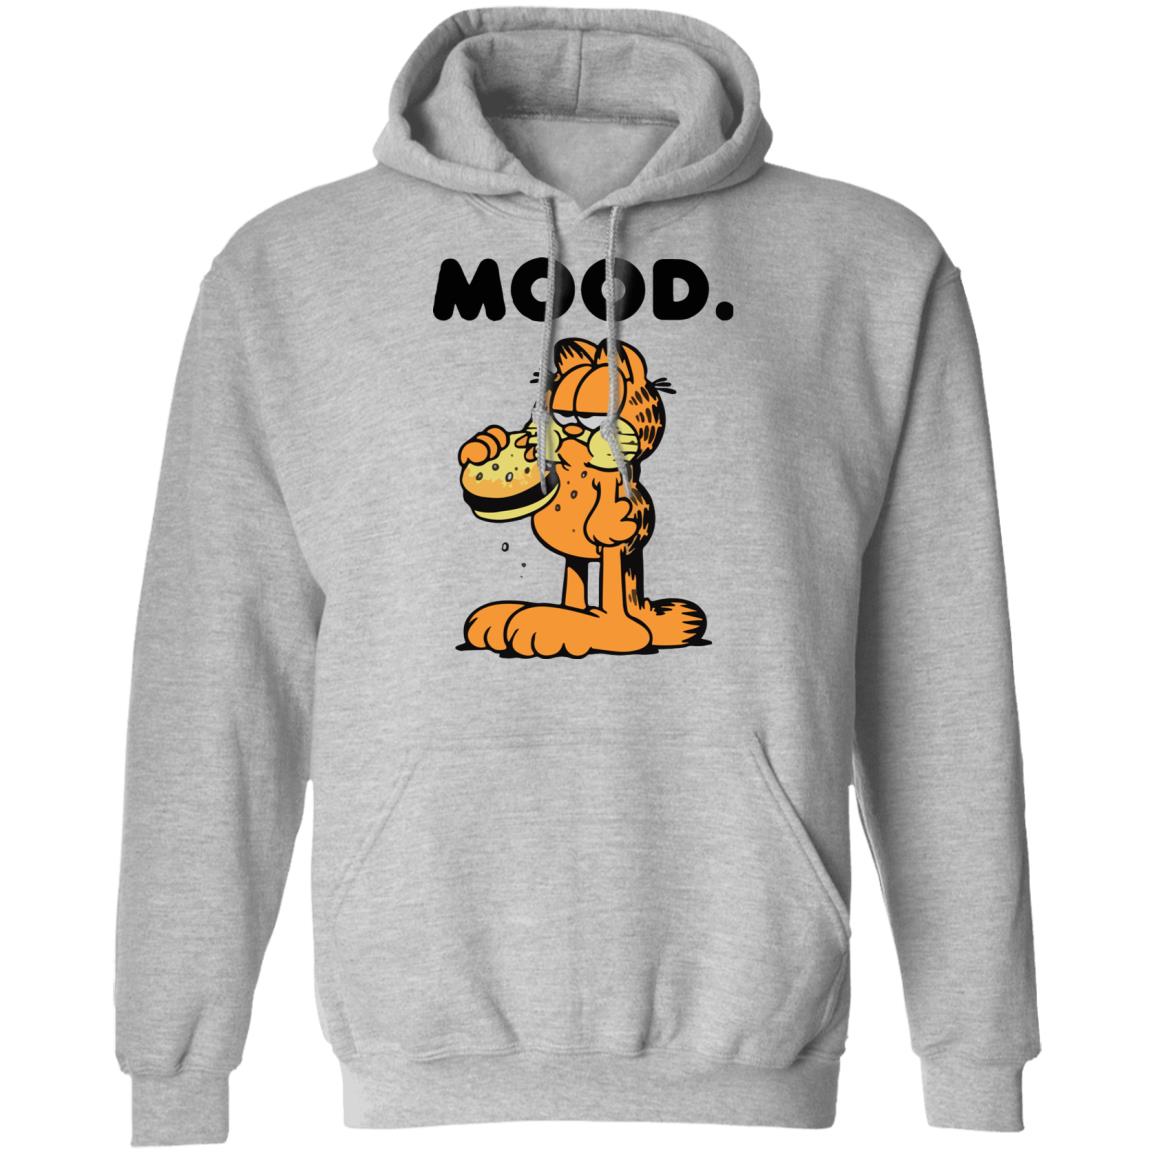 Garfield mood shirt - Rockatee